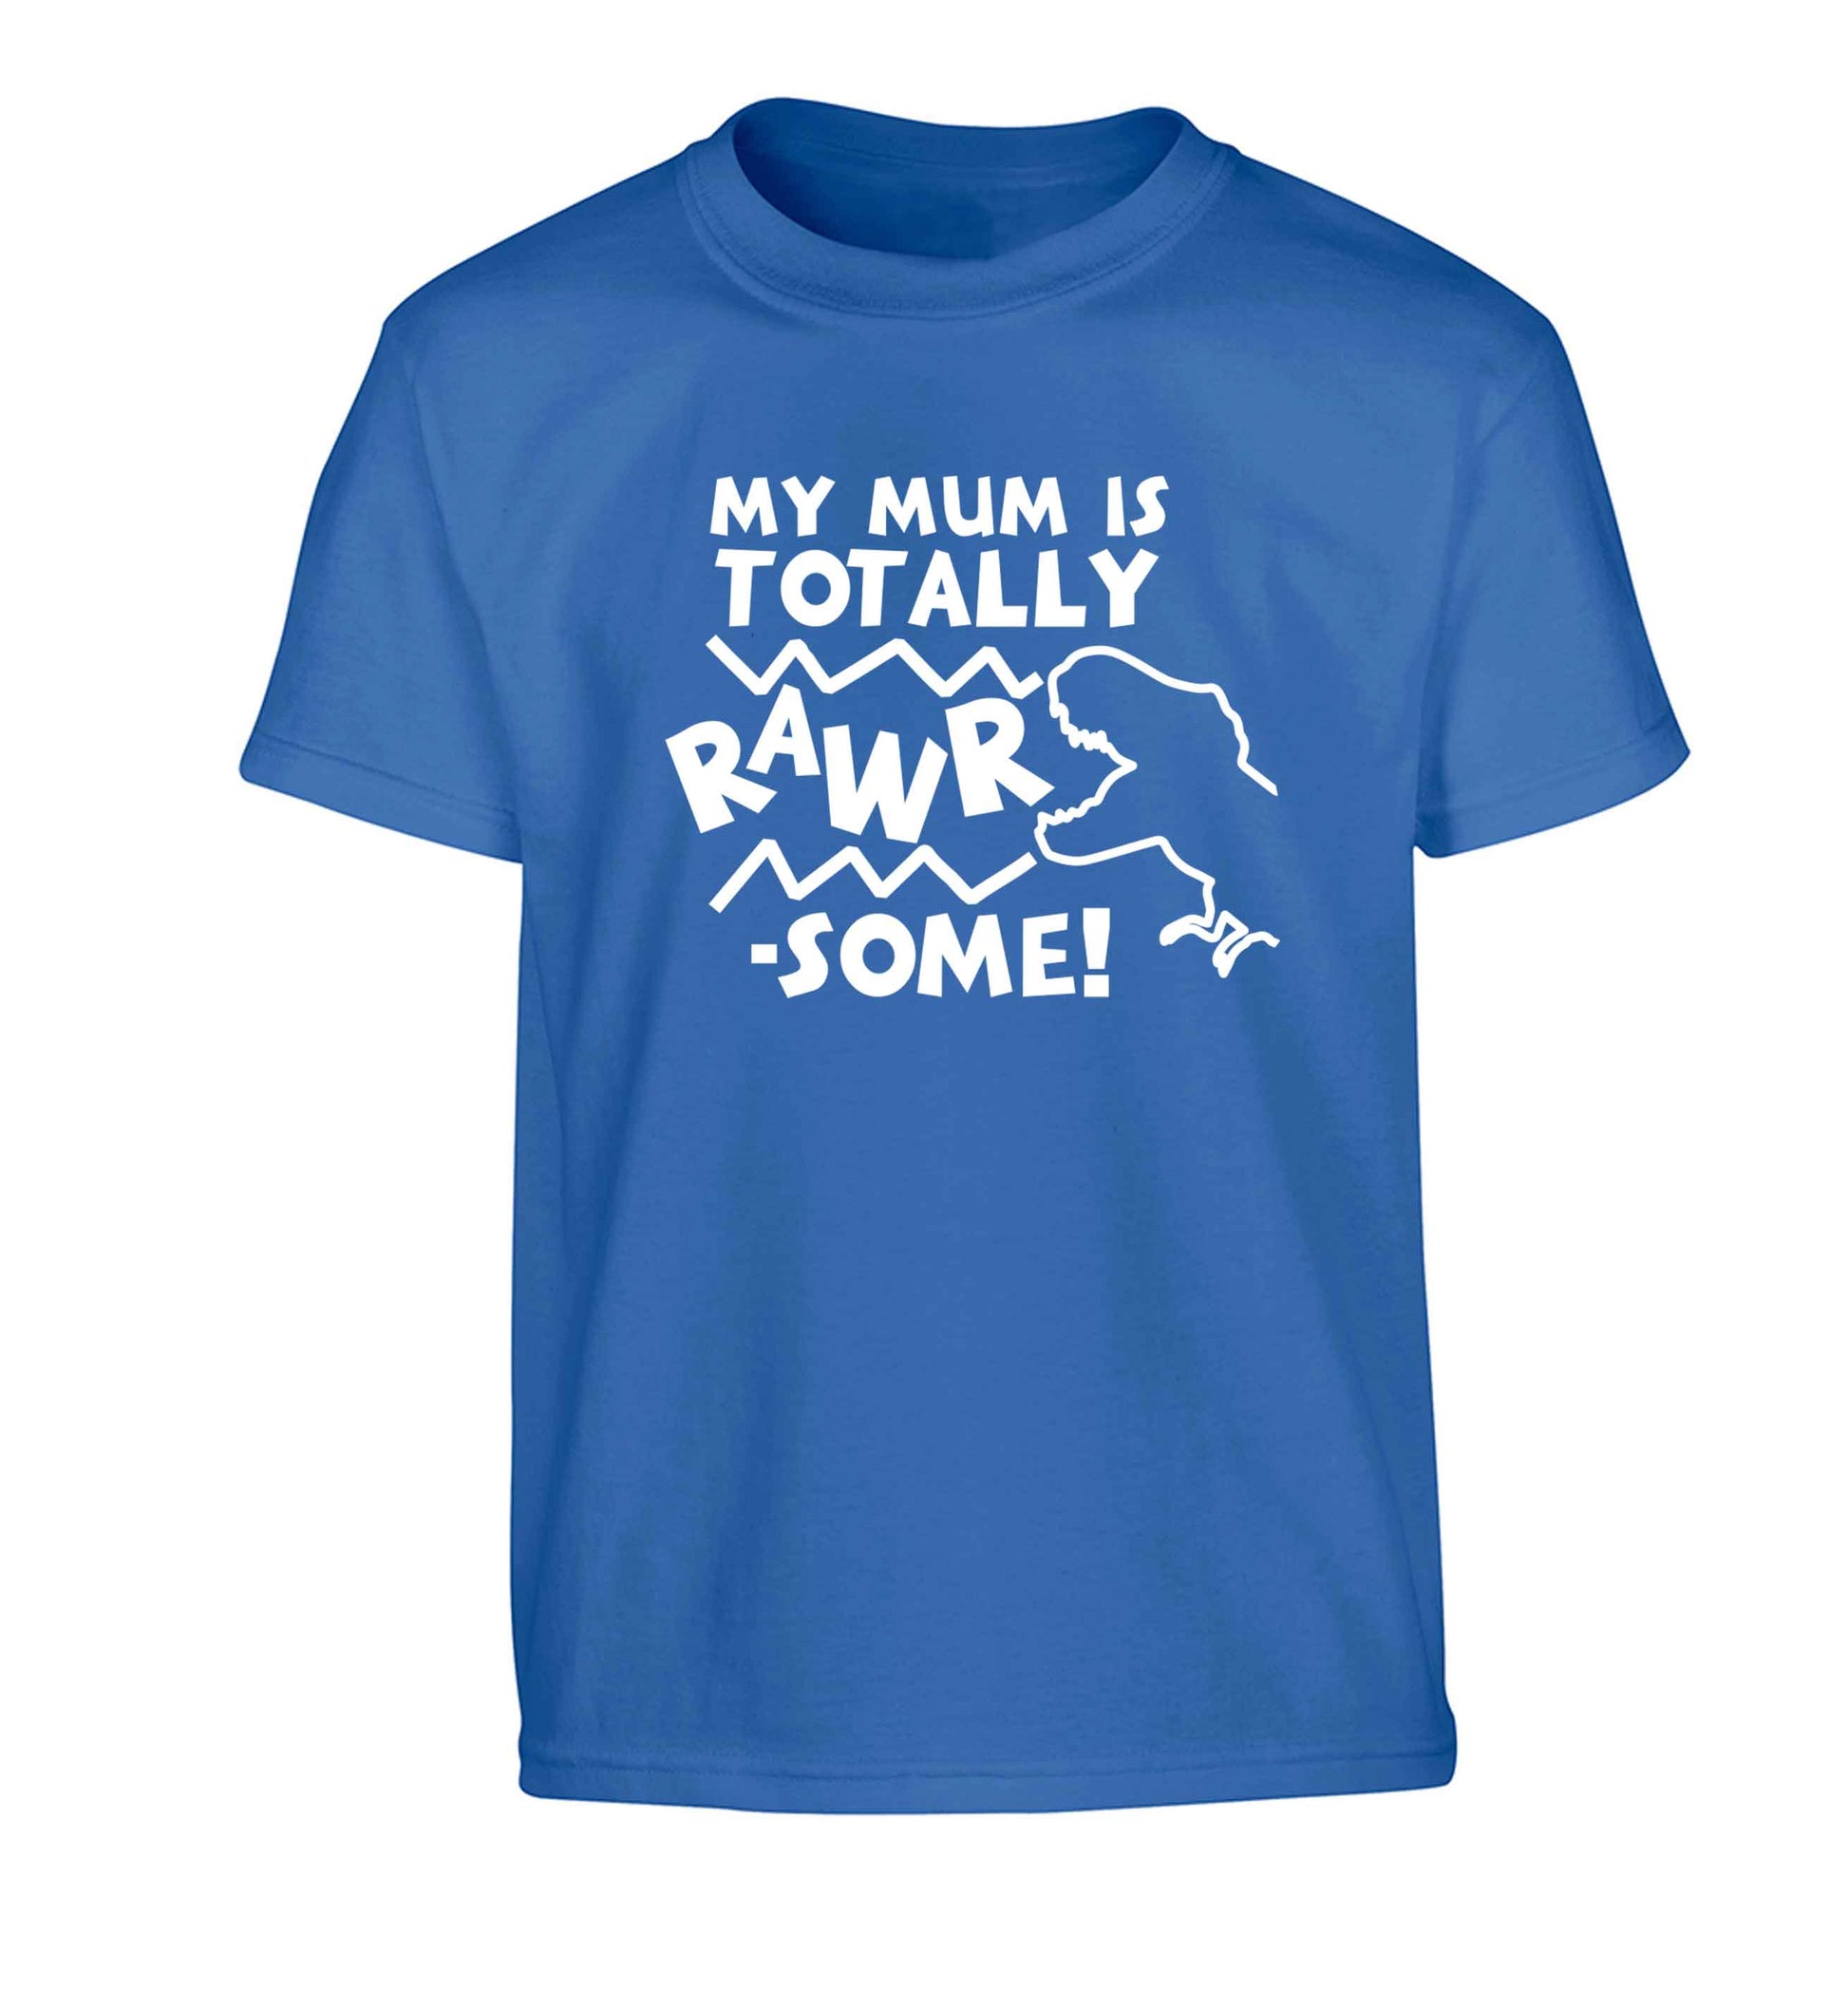 My mum is totally rawrsome Children's blue Tshirt 12-13 Years